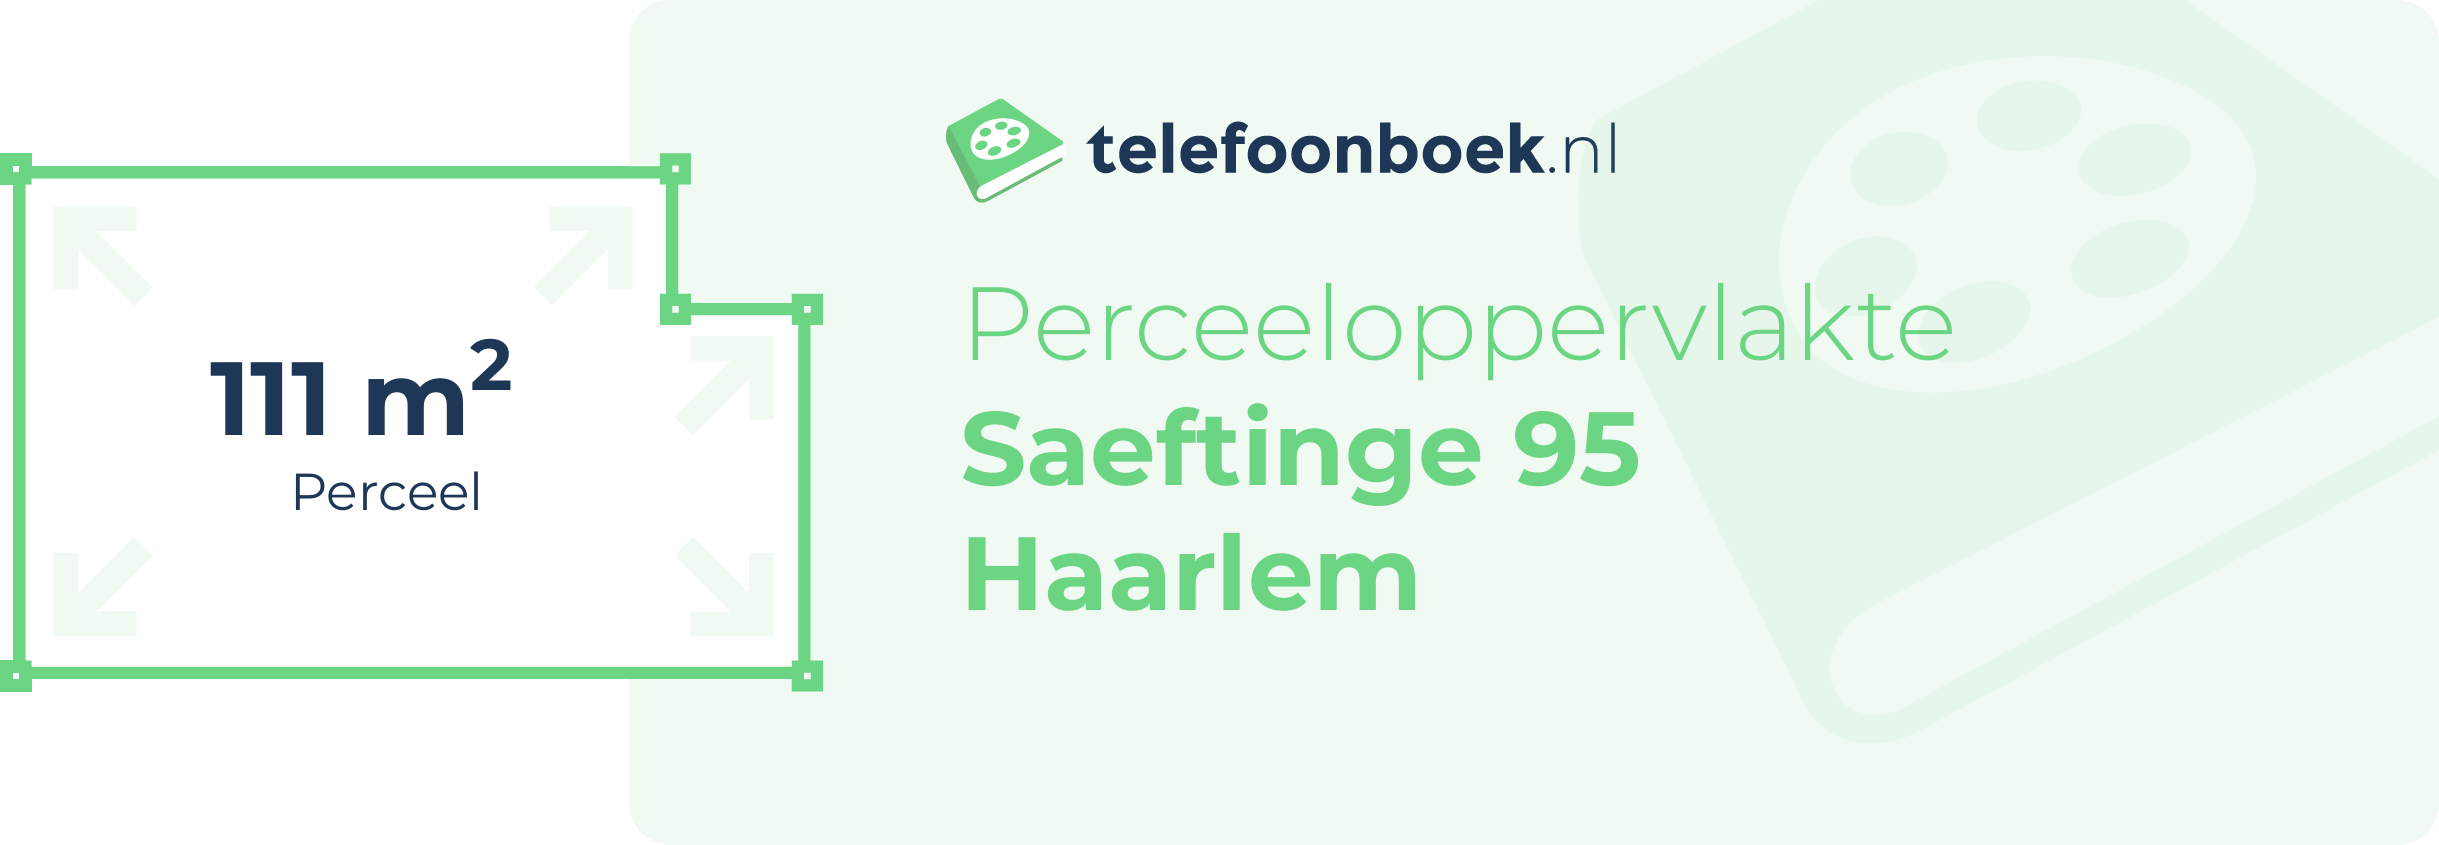 Perceeloppervlakte Saeftinge 95 Haarlem